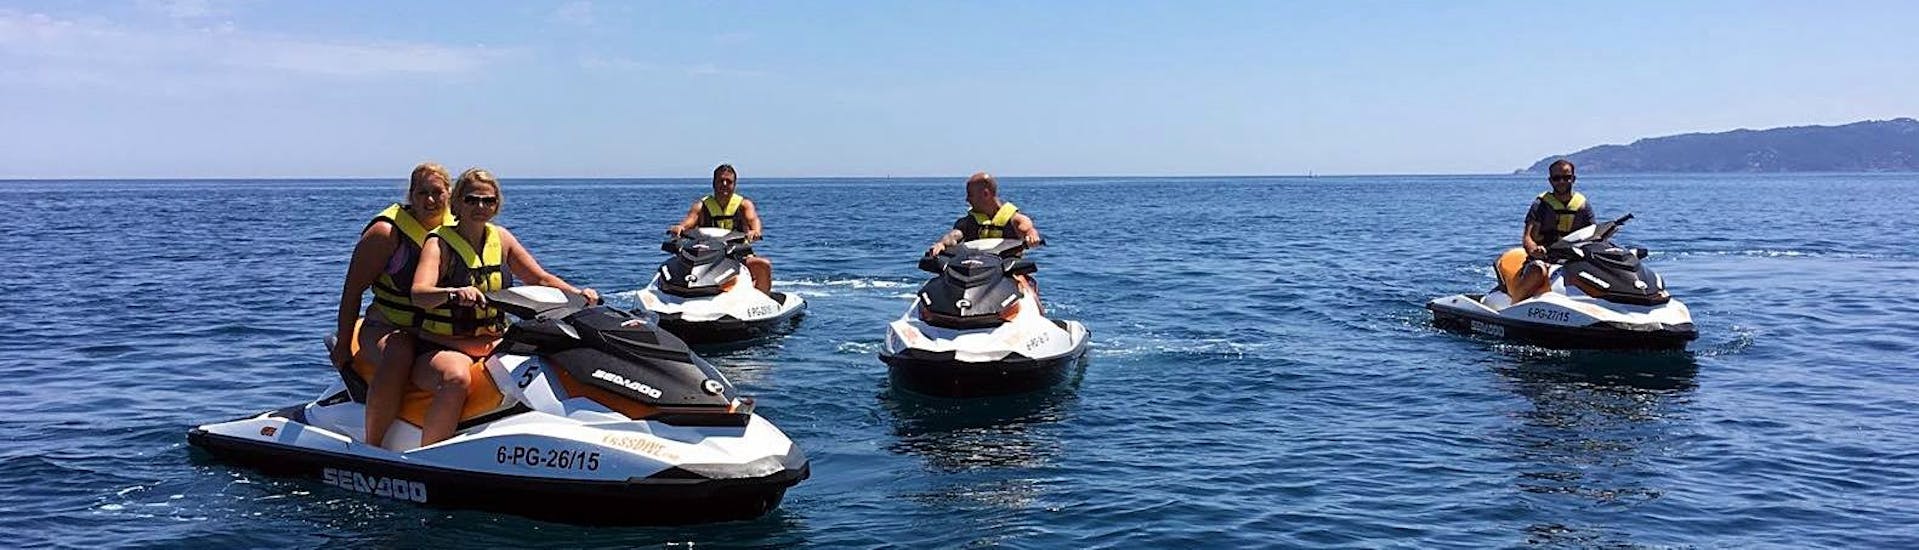 Una familia se divierte durante nuestro Jet Ski Safari por la costa de Platja d'Aro en Sant Feliu de Guíxols con Lassdive.